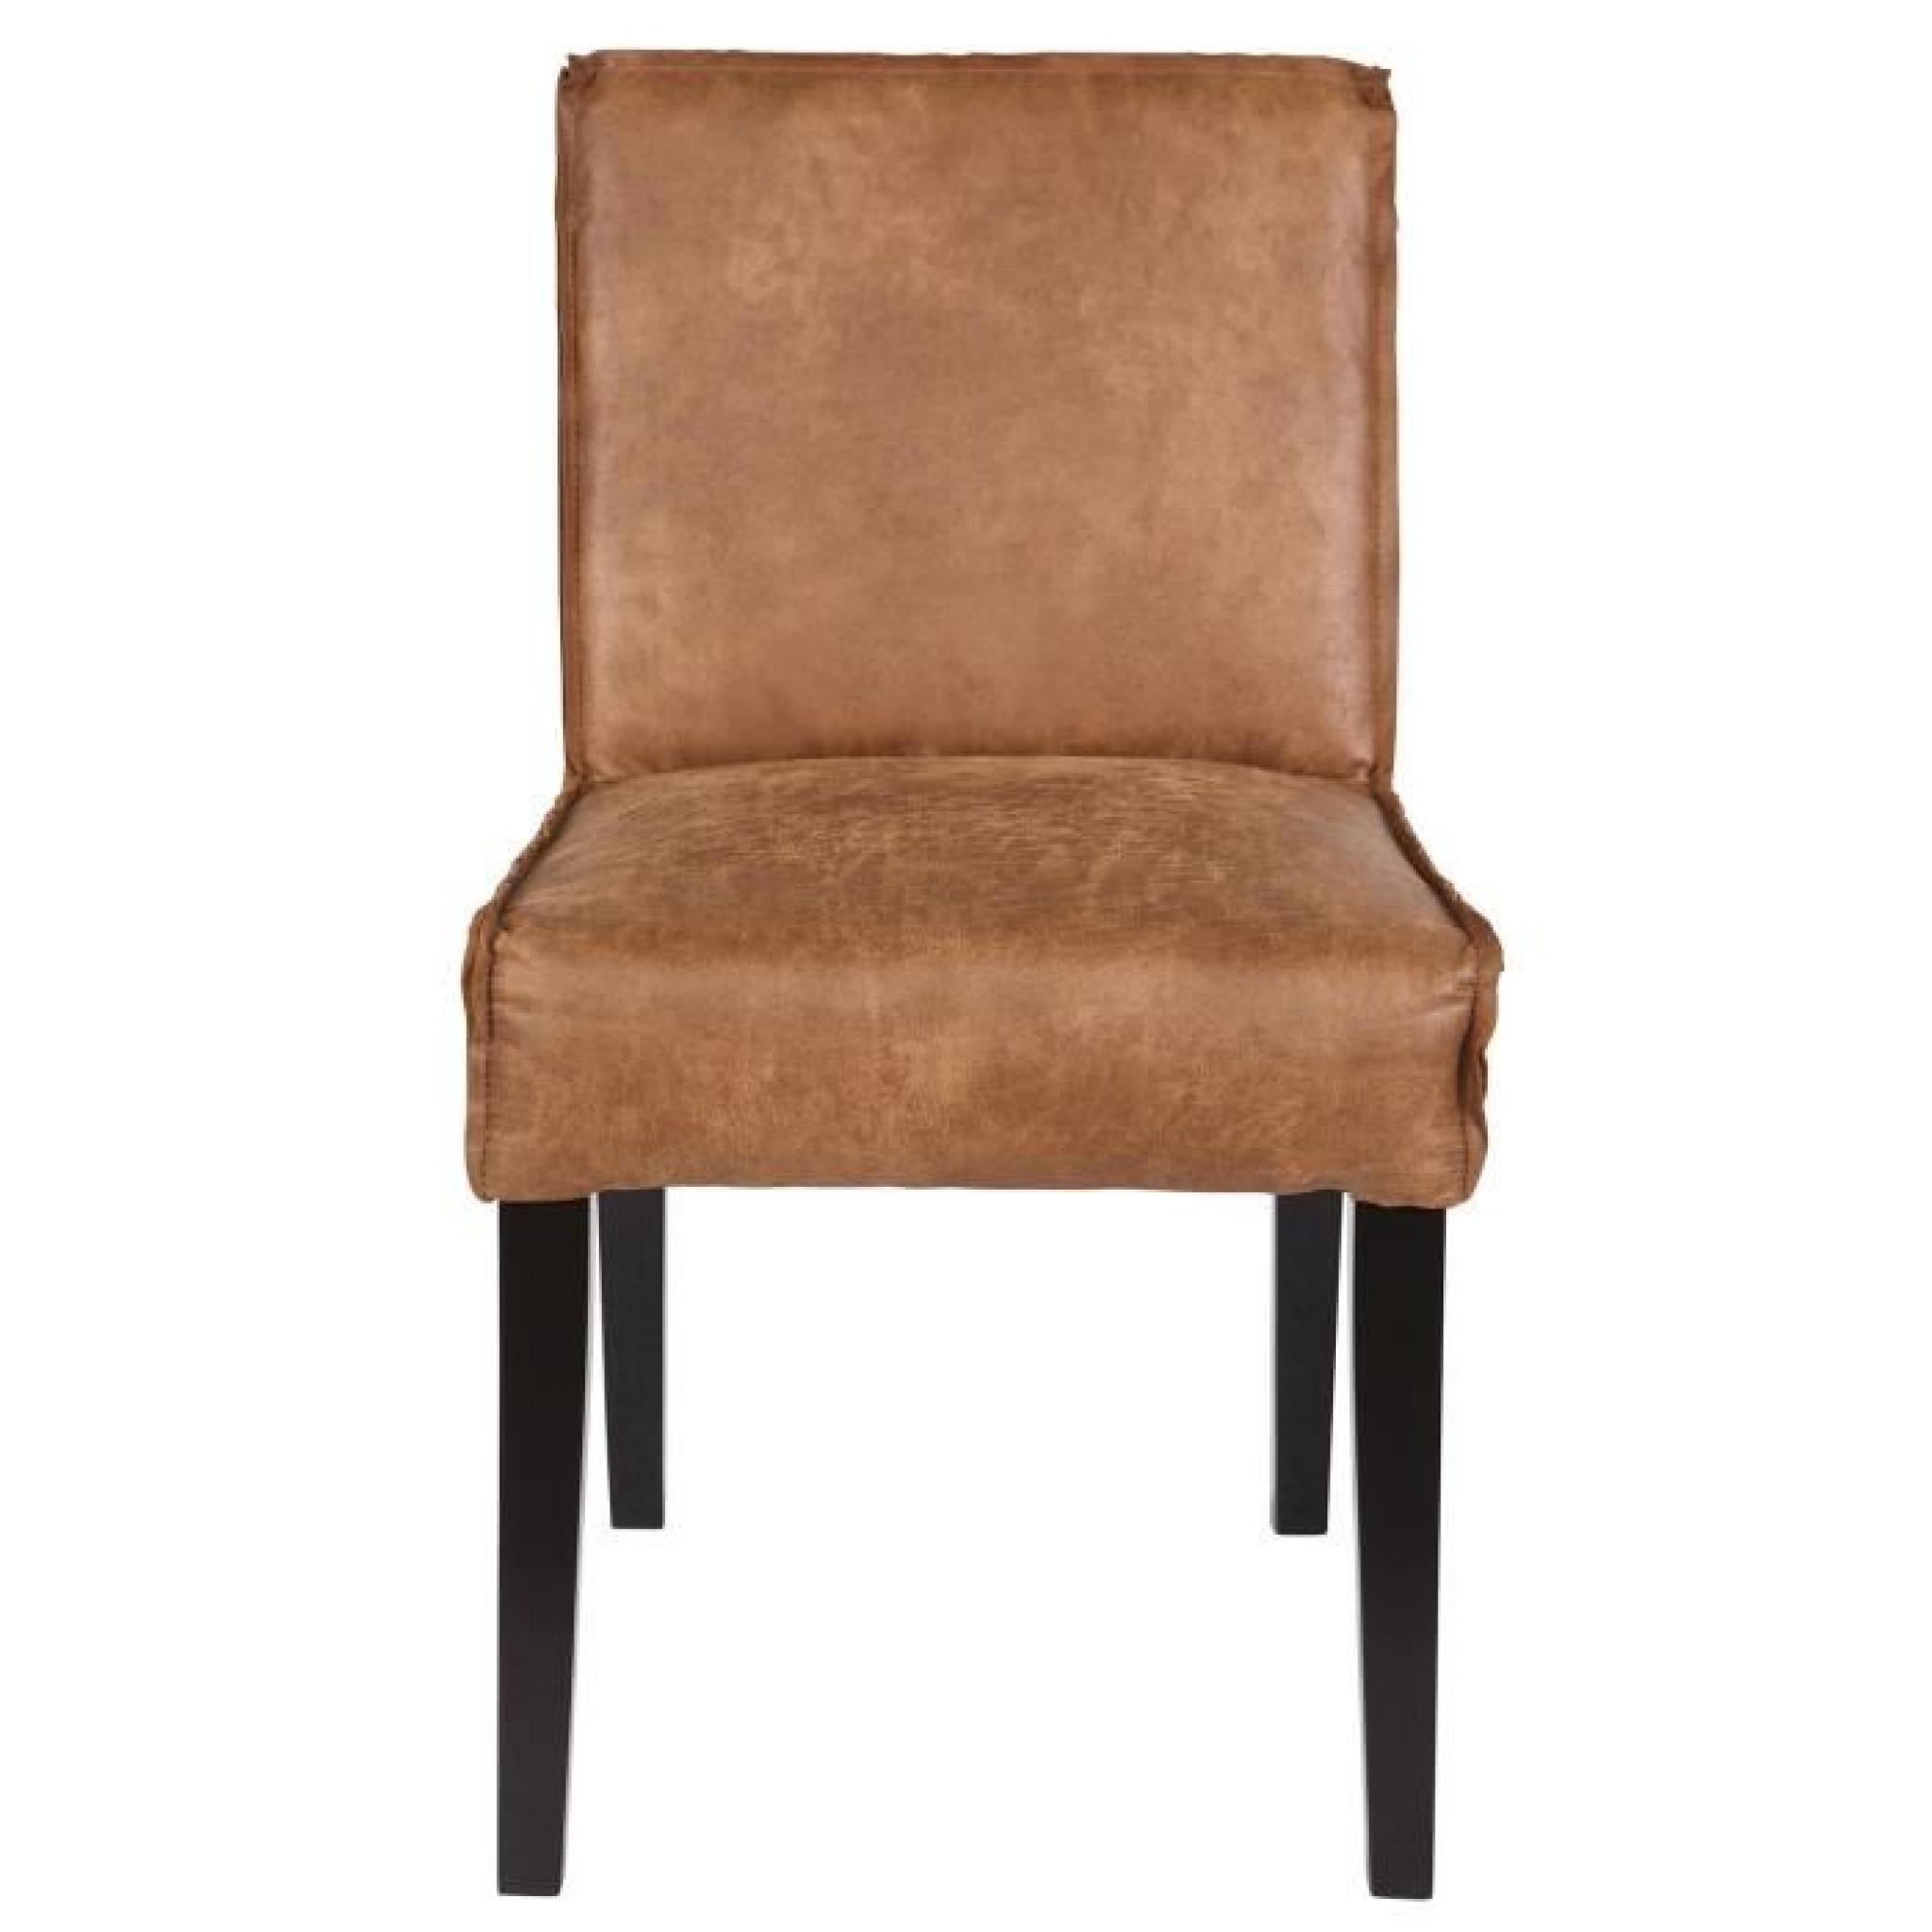 Chaise coloris cognac en cuir, H 83 x L 45 x P 61 cm